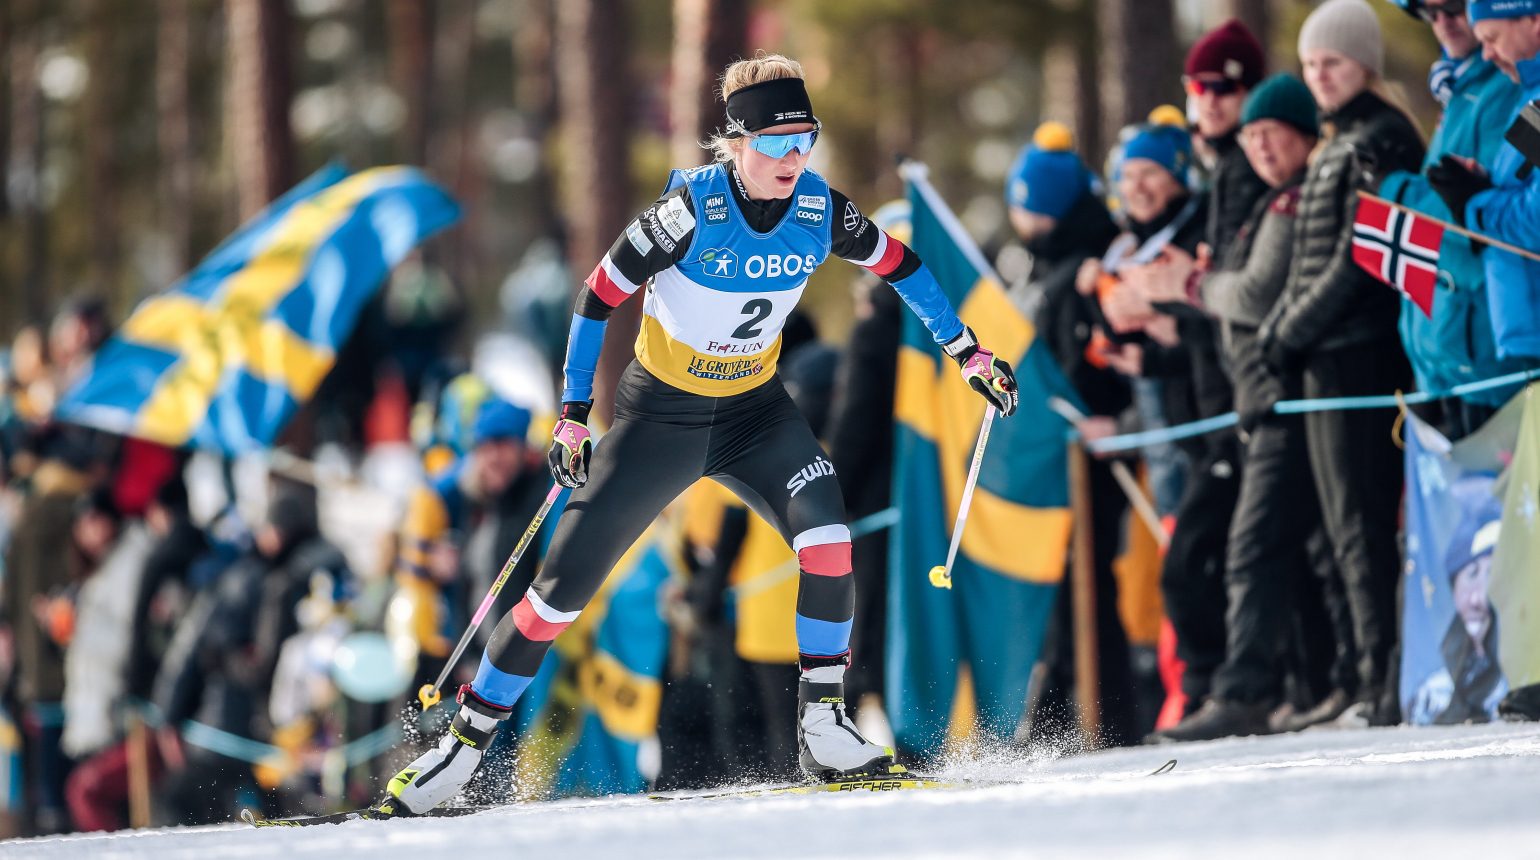 Běžkyně na lyžích Janatová uzavřela sezonu Světového poháru 32. místem na desítce